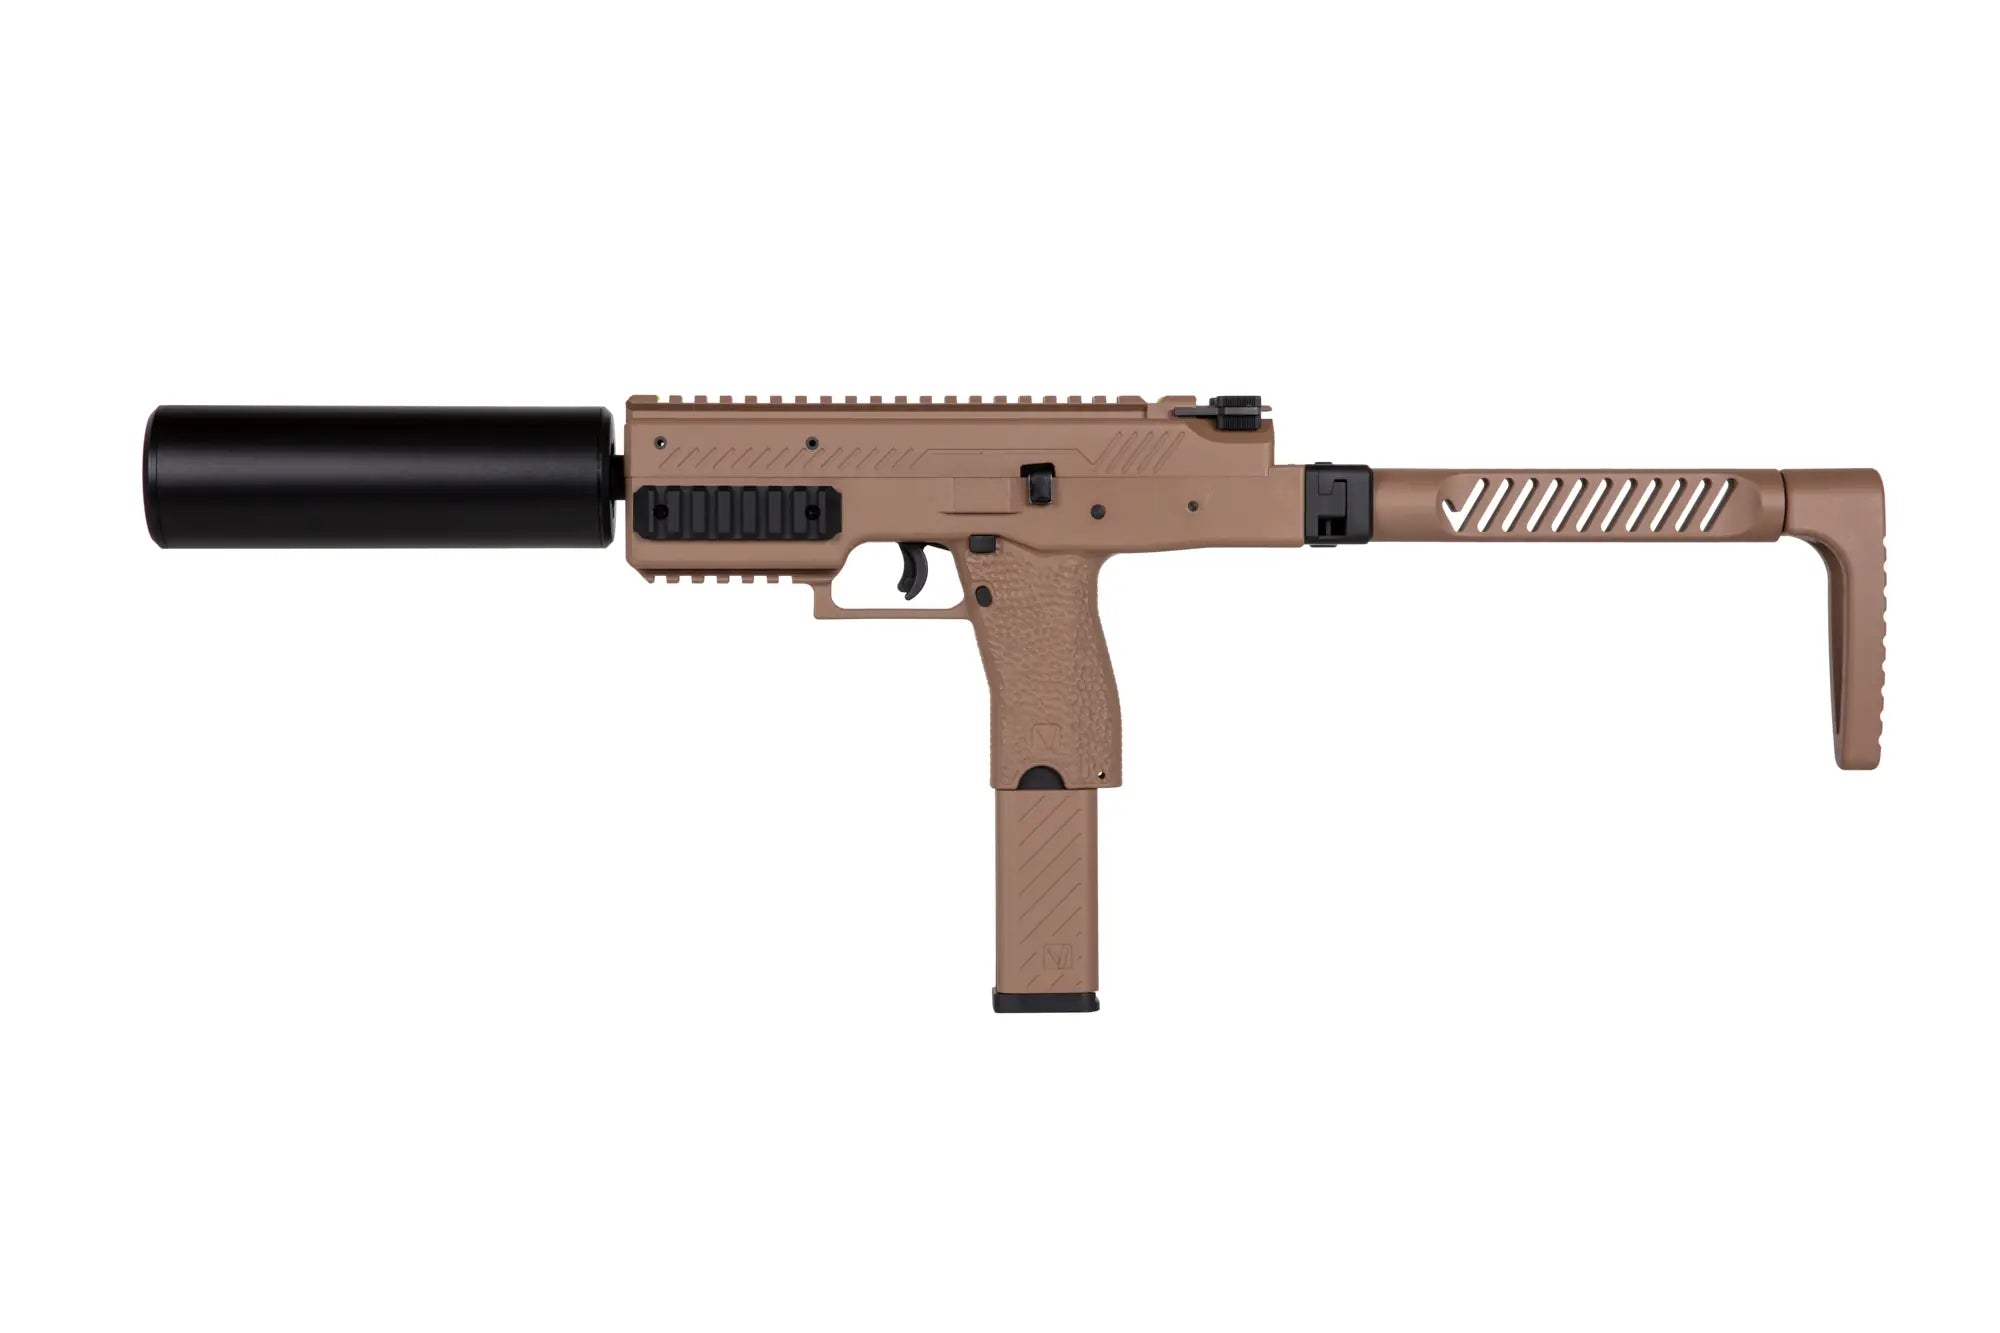 Replika pistoletu maszynowego VMP-1 X - Tan